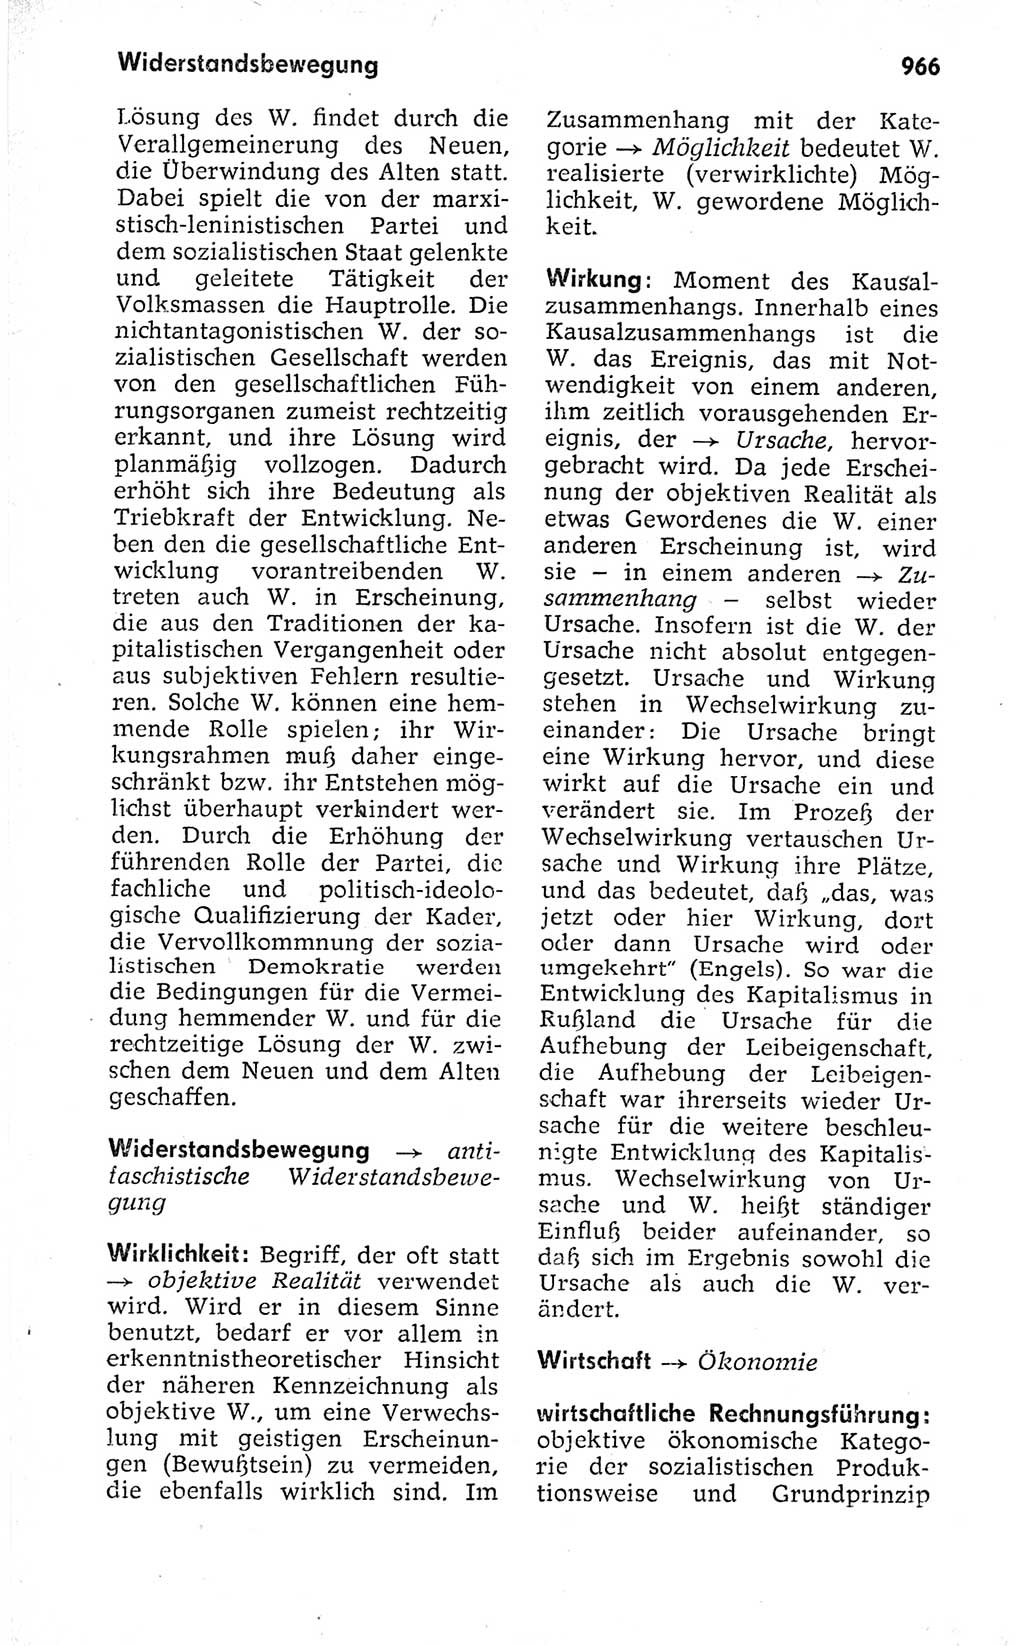 Kleines politisches Wörterbuch [Deutsche Demokratische Republik (DDR)] 1973, Seite 966 (Kl. pol. Wb. DDR 1973, S. 966)